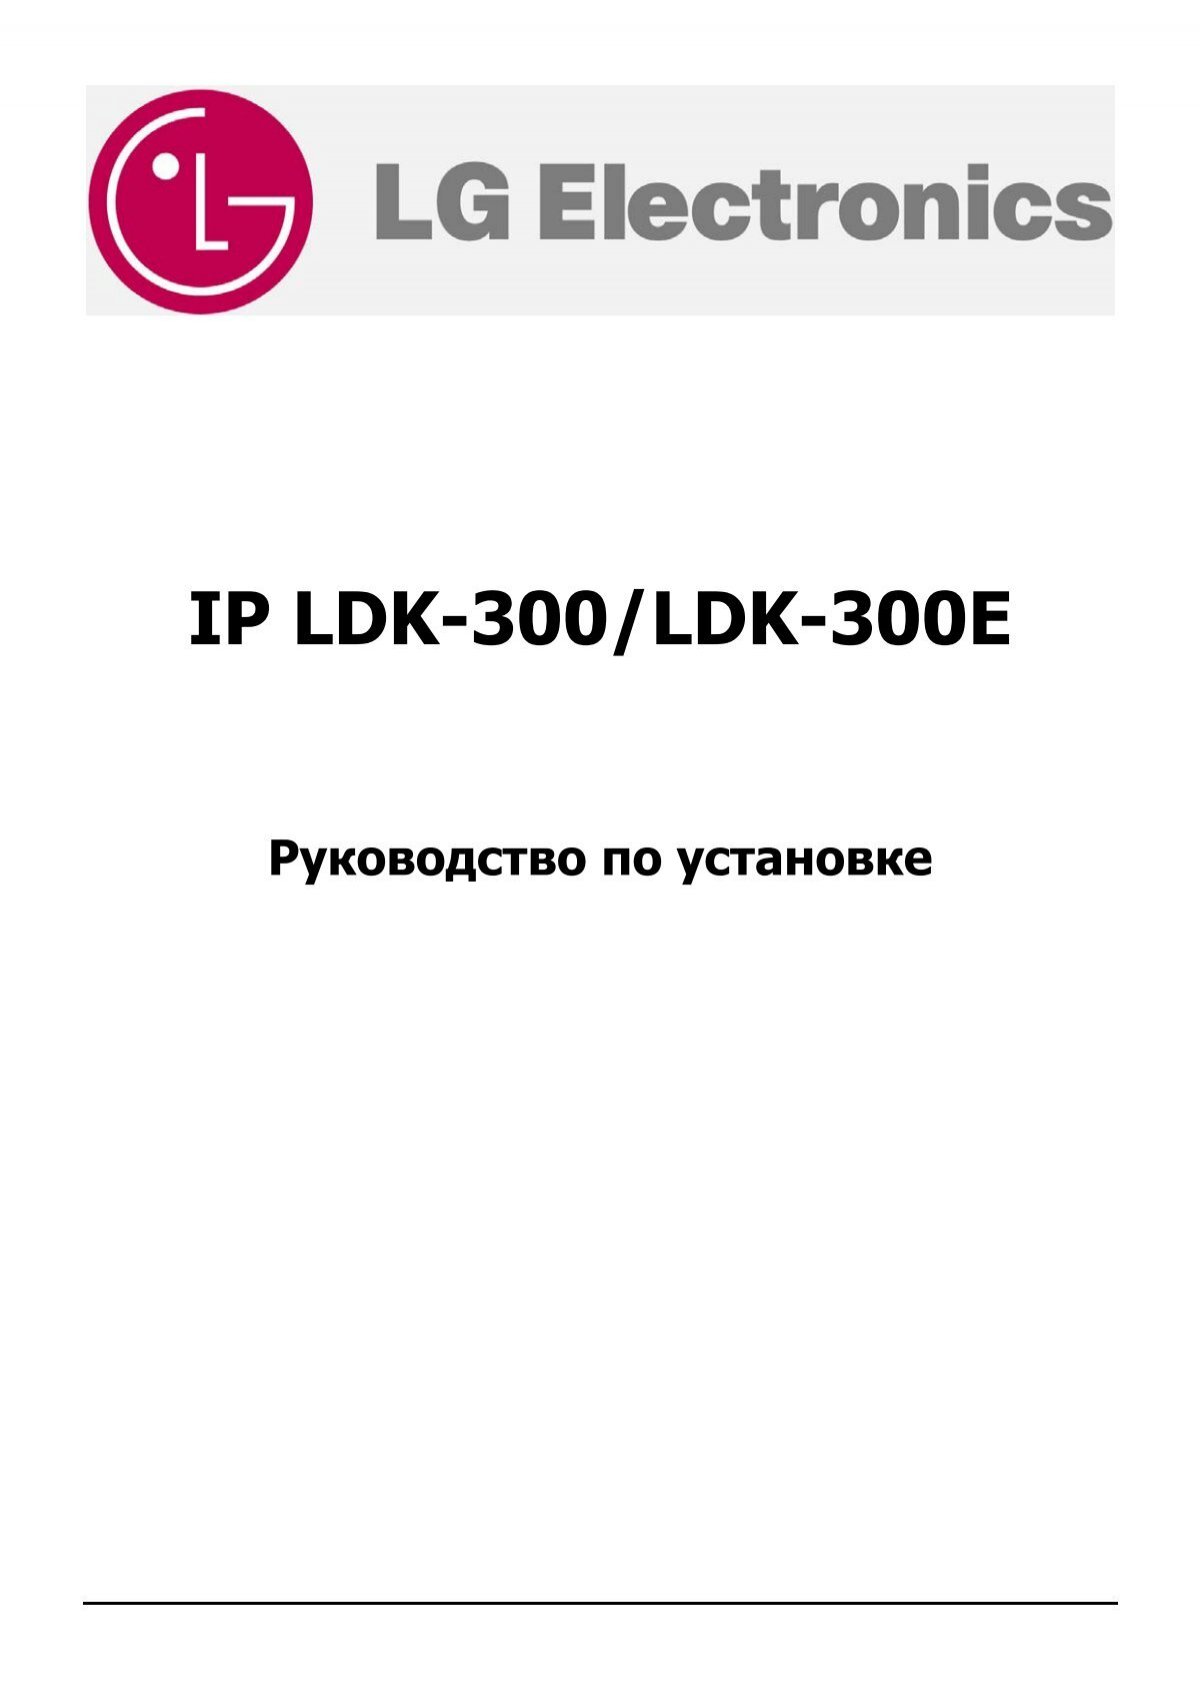 Руководство По Установке АТС IpLDK-300/300E